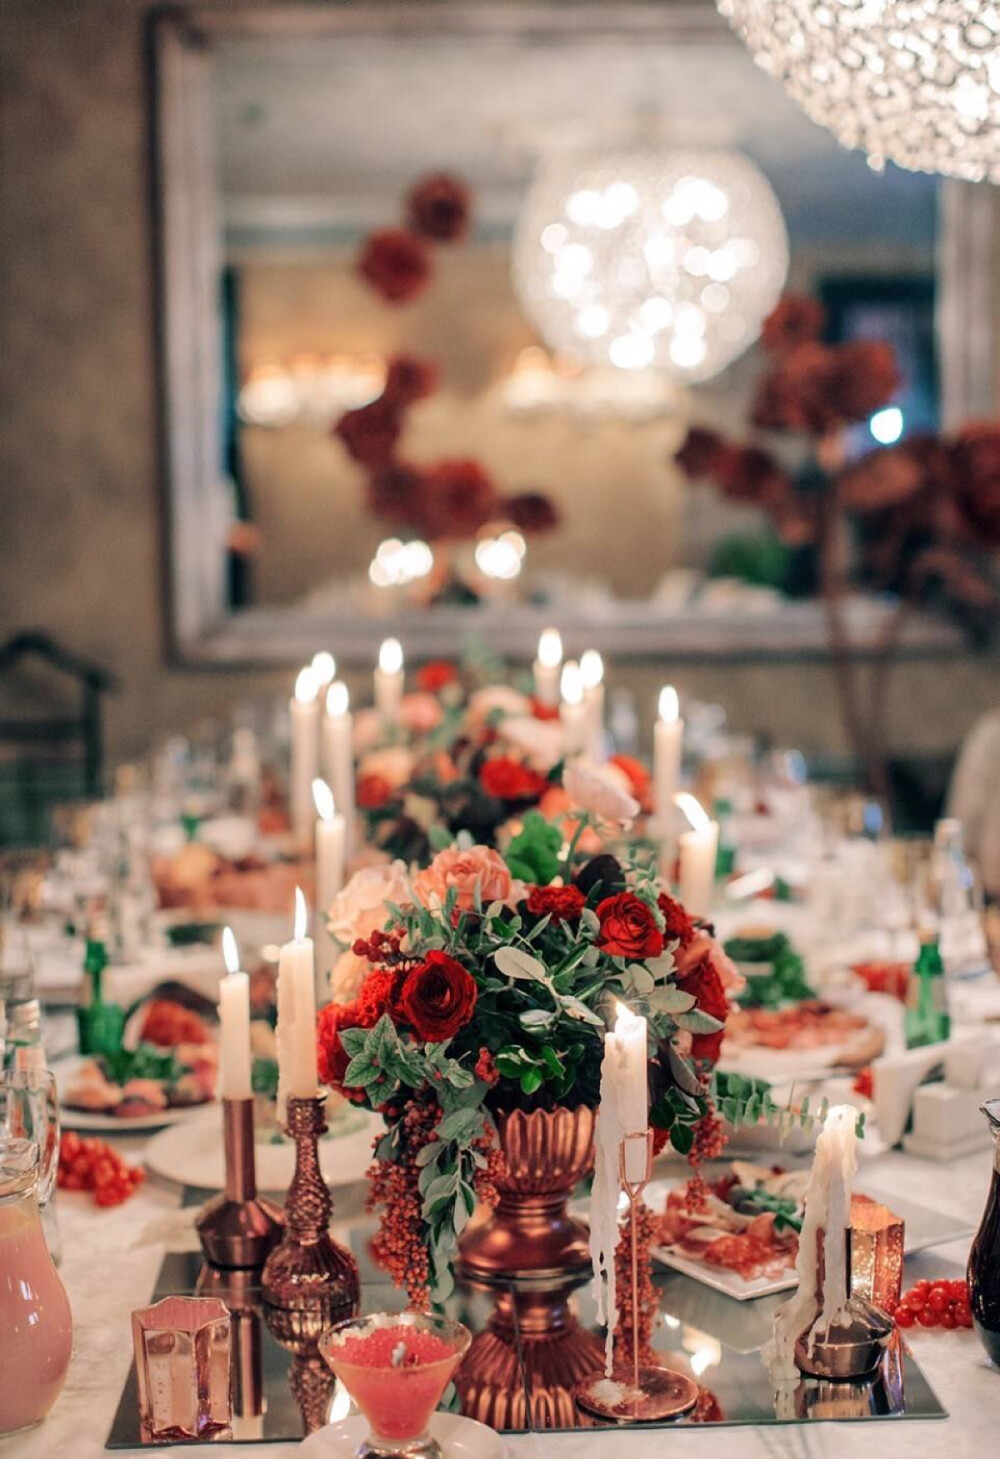 一瓶红葡萄酒为主题。在此基础上，大胆的运用葡萄酒红，铜，金，粉的色调作为装饰用花，酒红色天鹅绒，大型花朵，水果，芝士蛋糕和大量的蜡烛，创造了一个独特神奇的红葡萄酒婚礼。